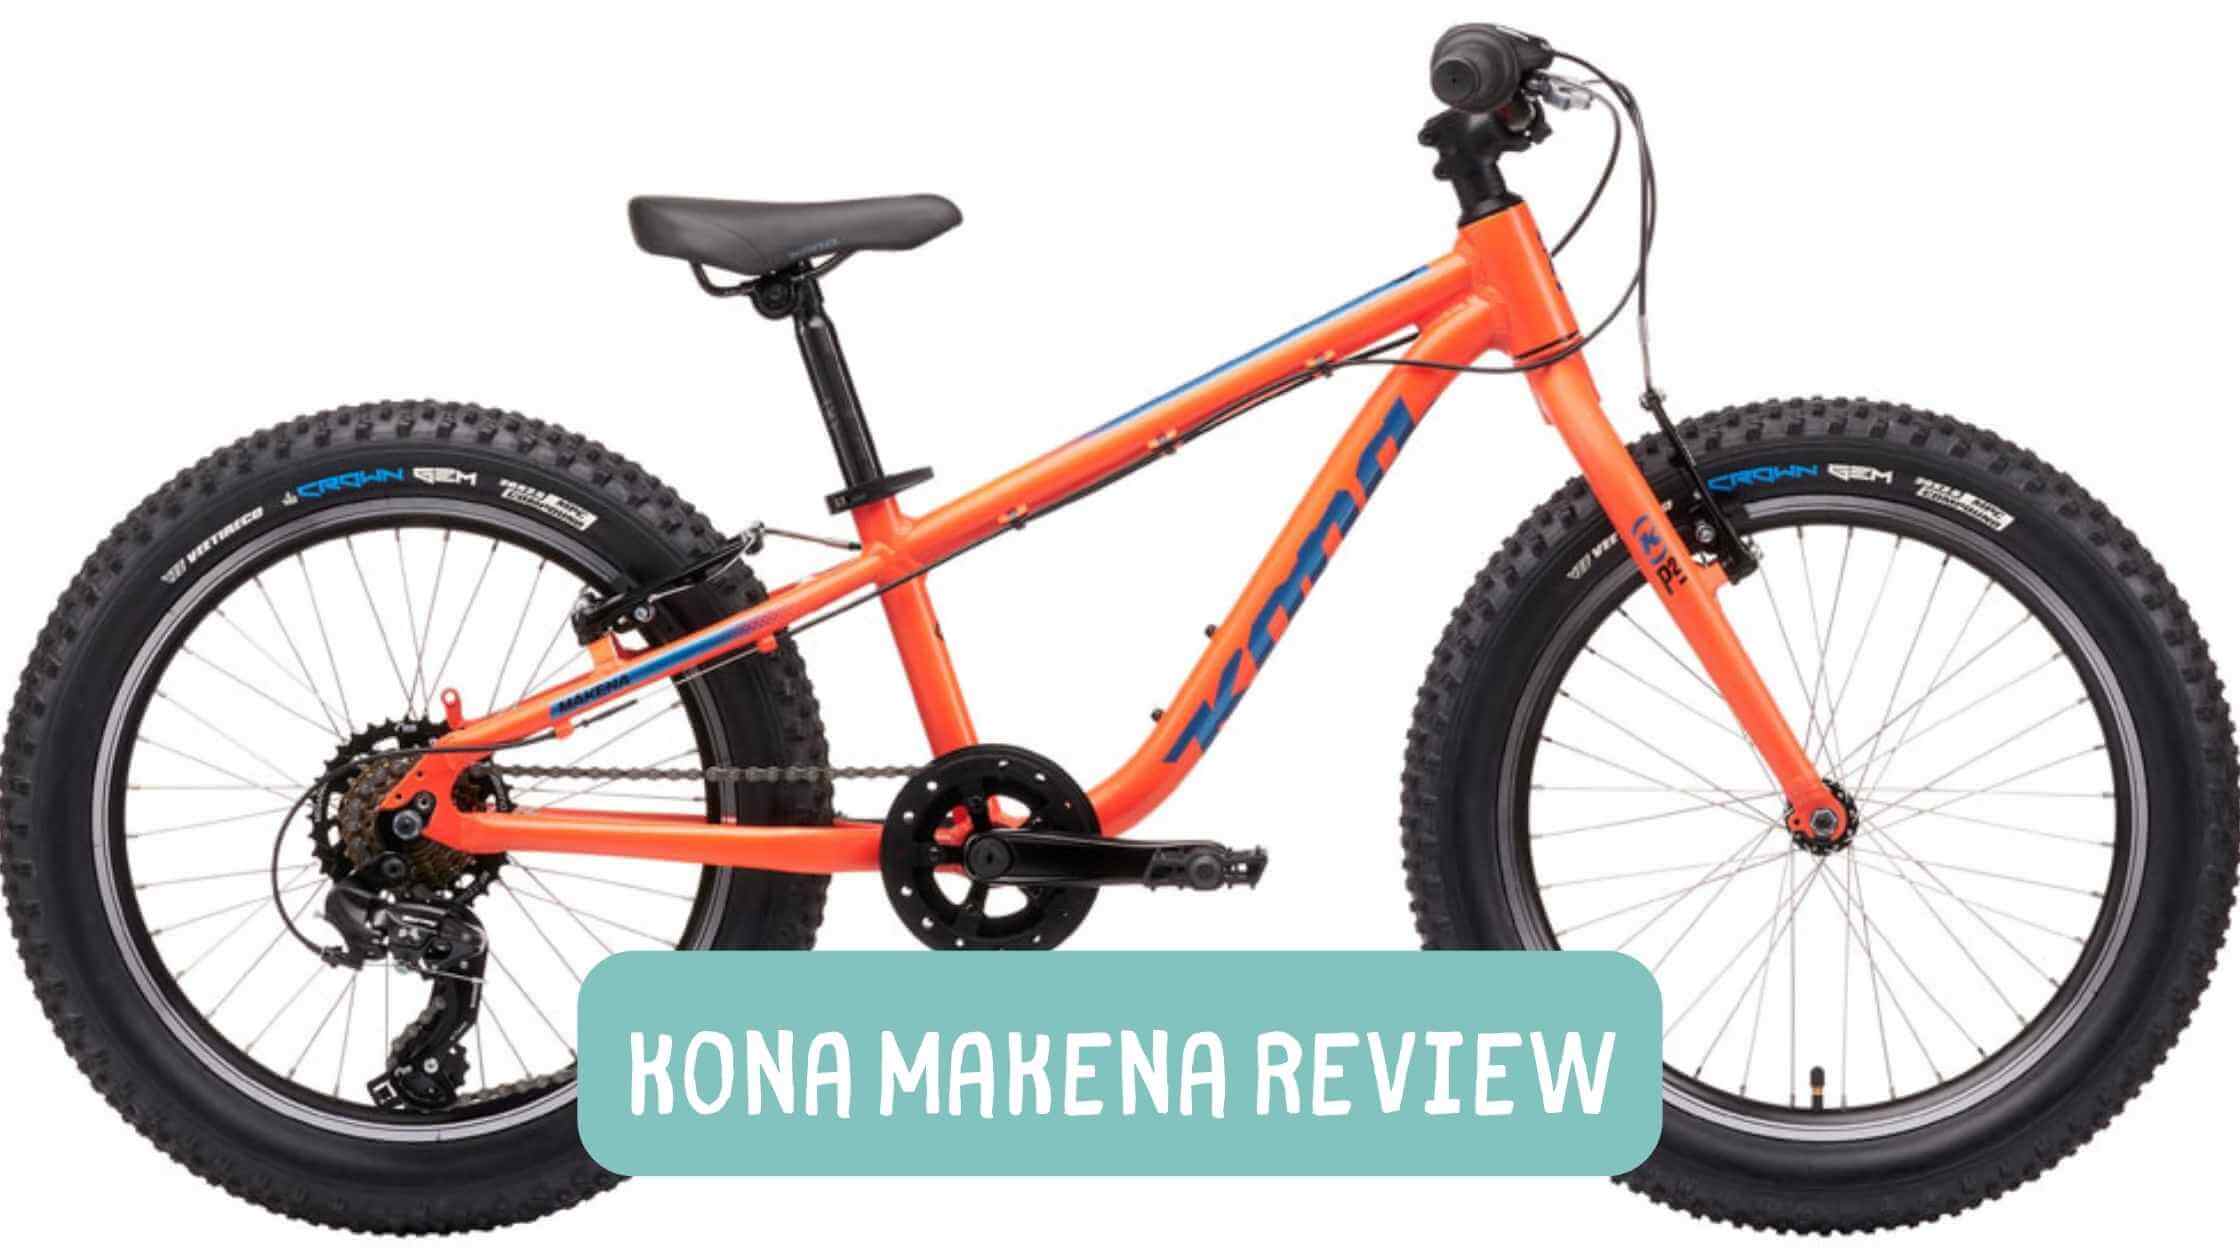 Kona Makena Review